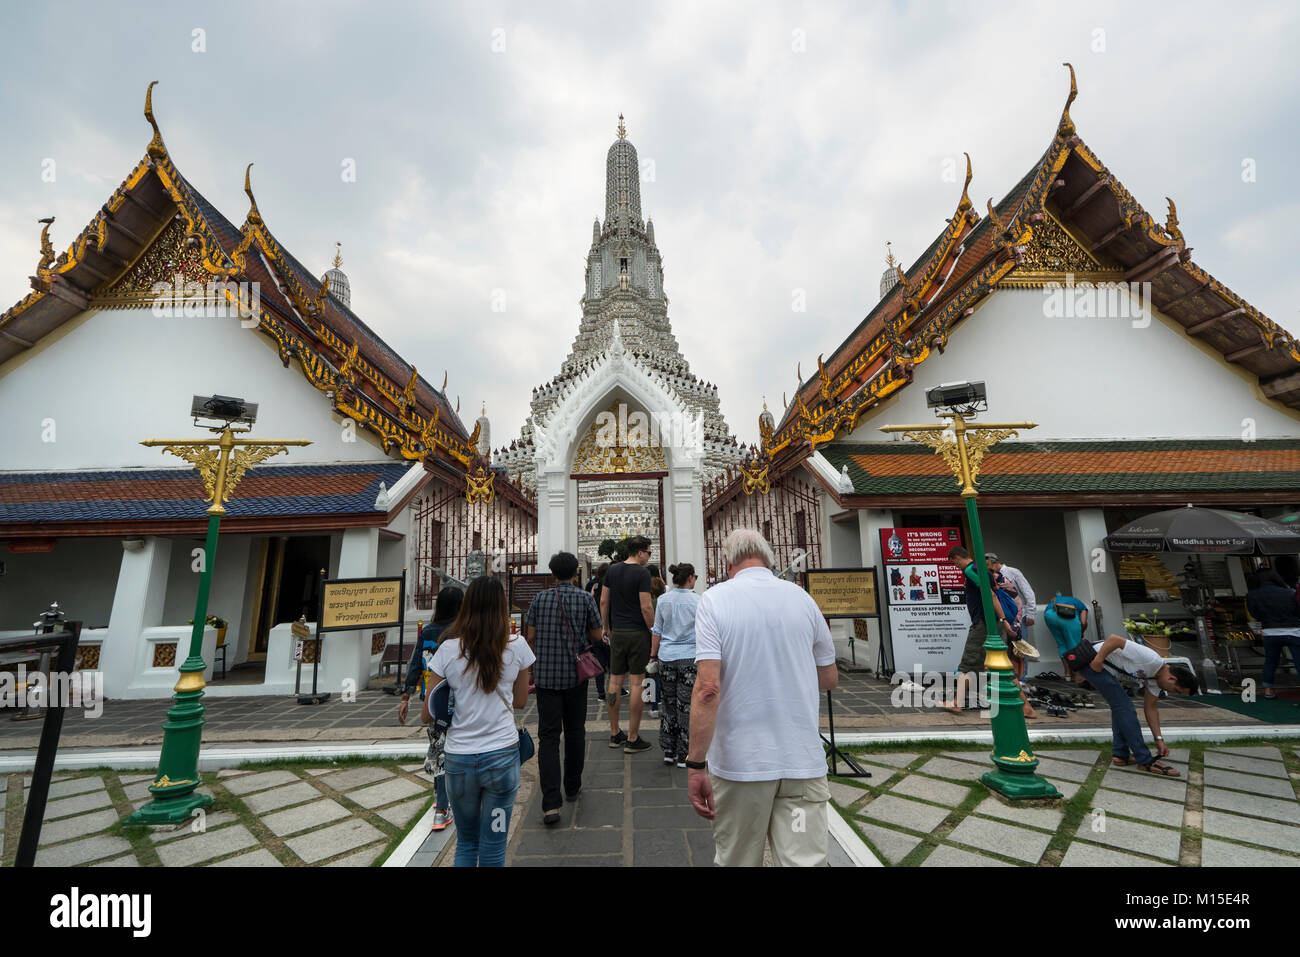 La facciata di un edificio del complesso di Wat Arun tempio a Bangkok, in Thailandia Foto Stock